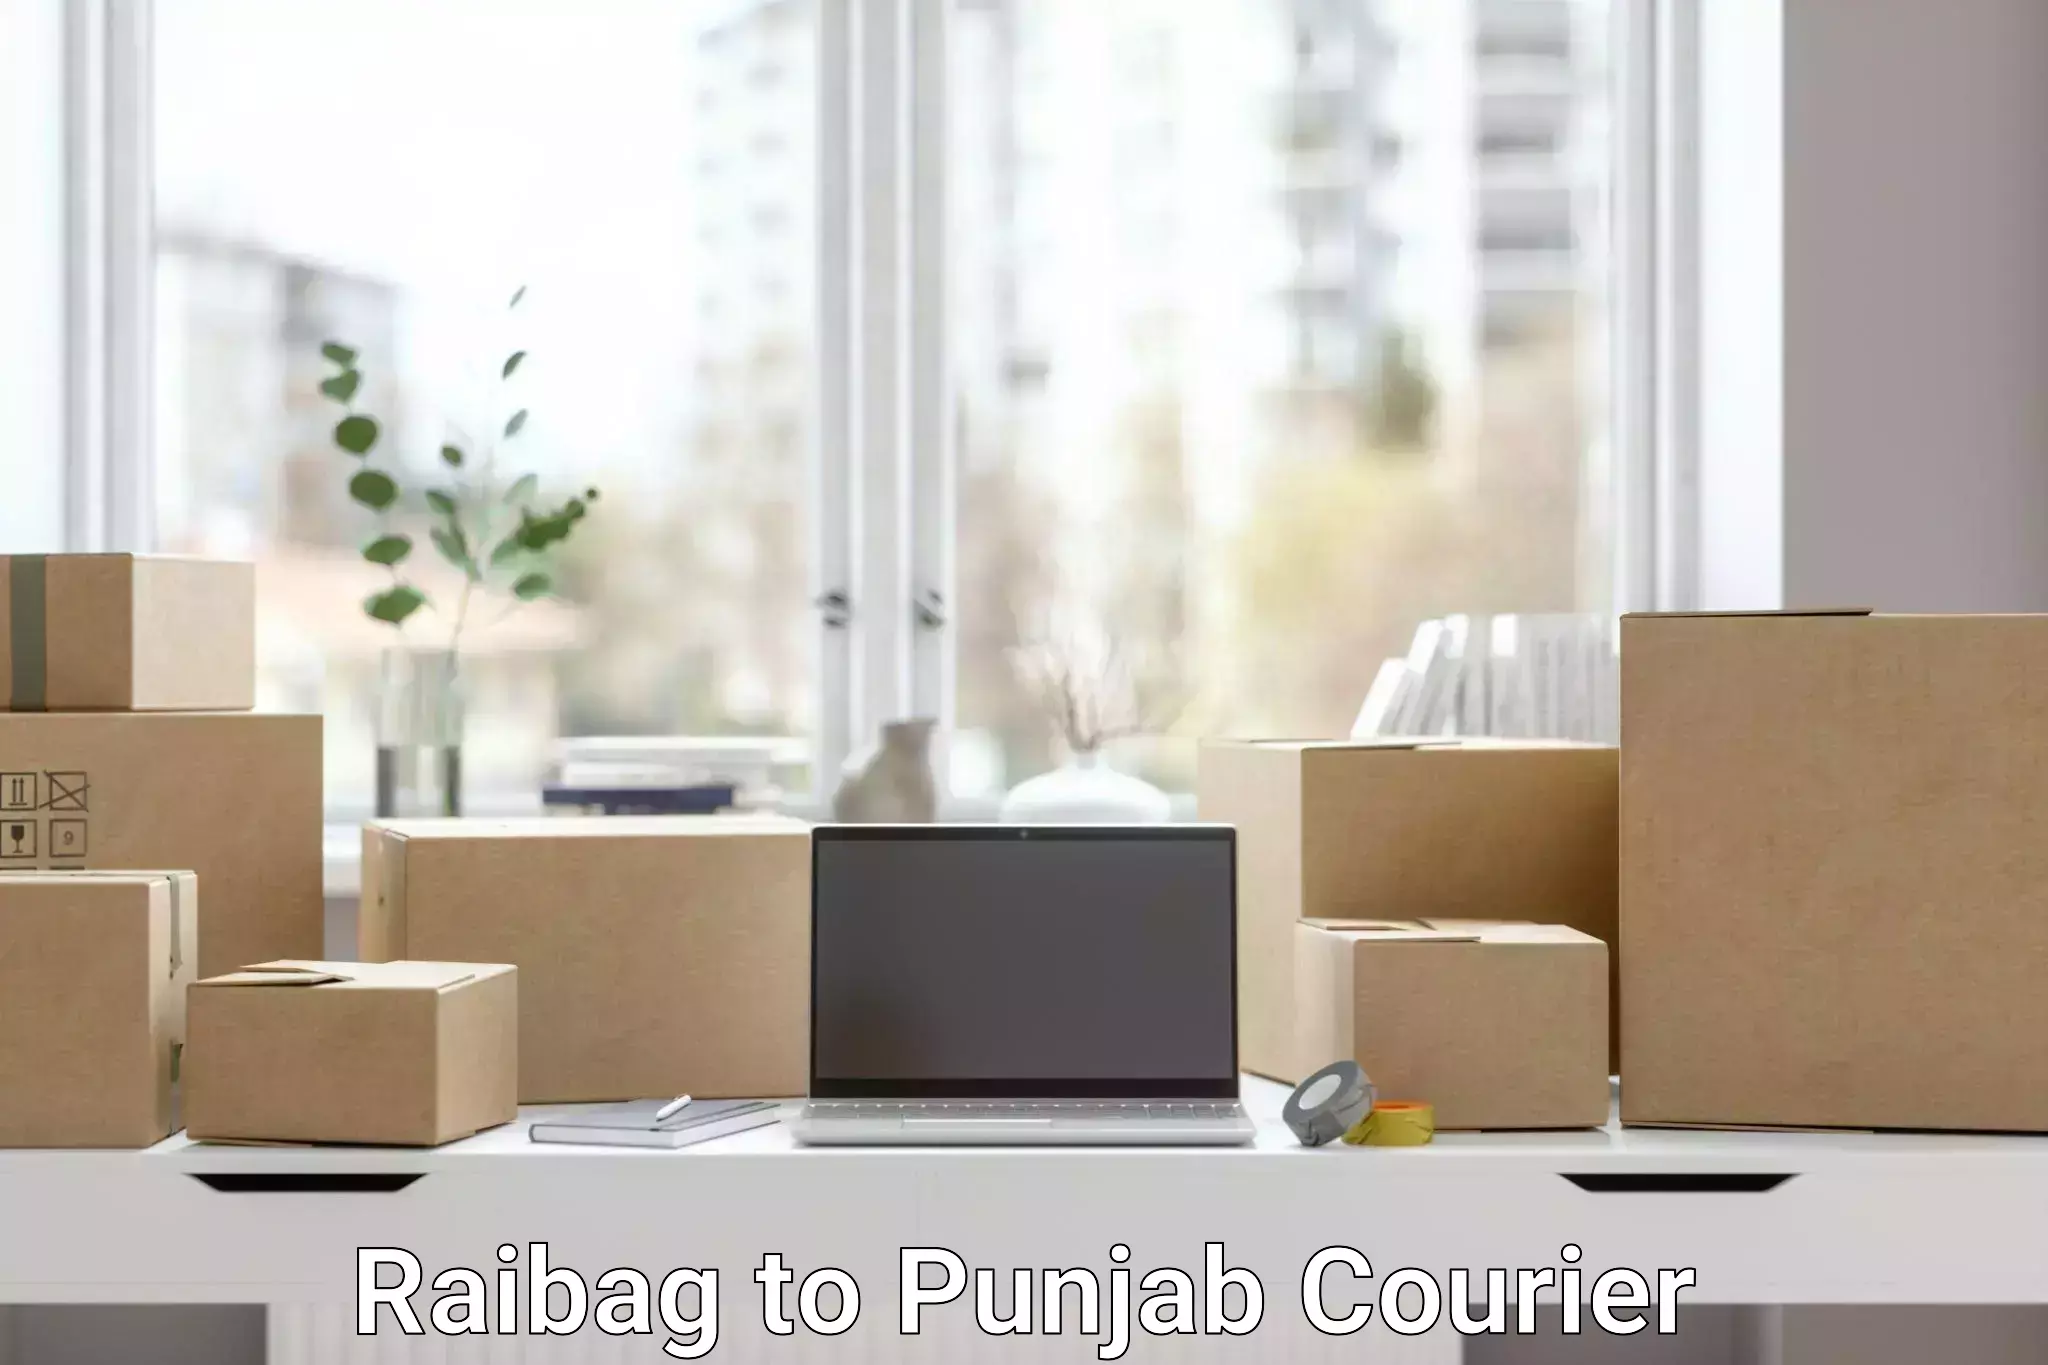 Comprehensive shipping network Raibag to Punjab